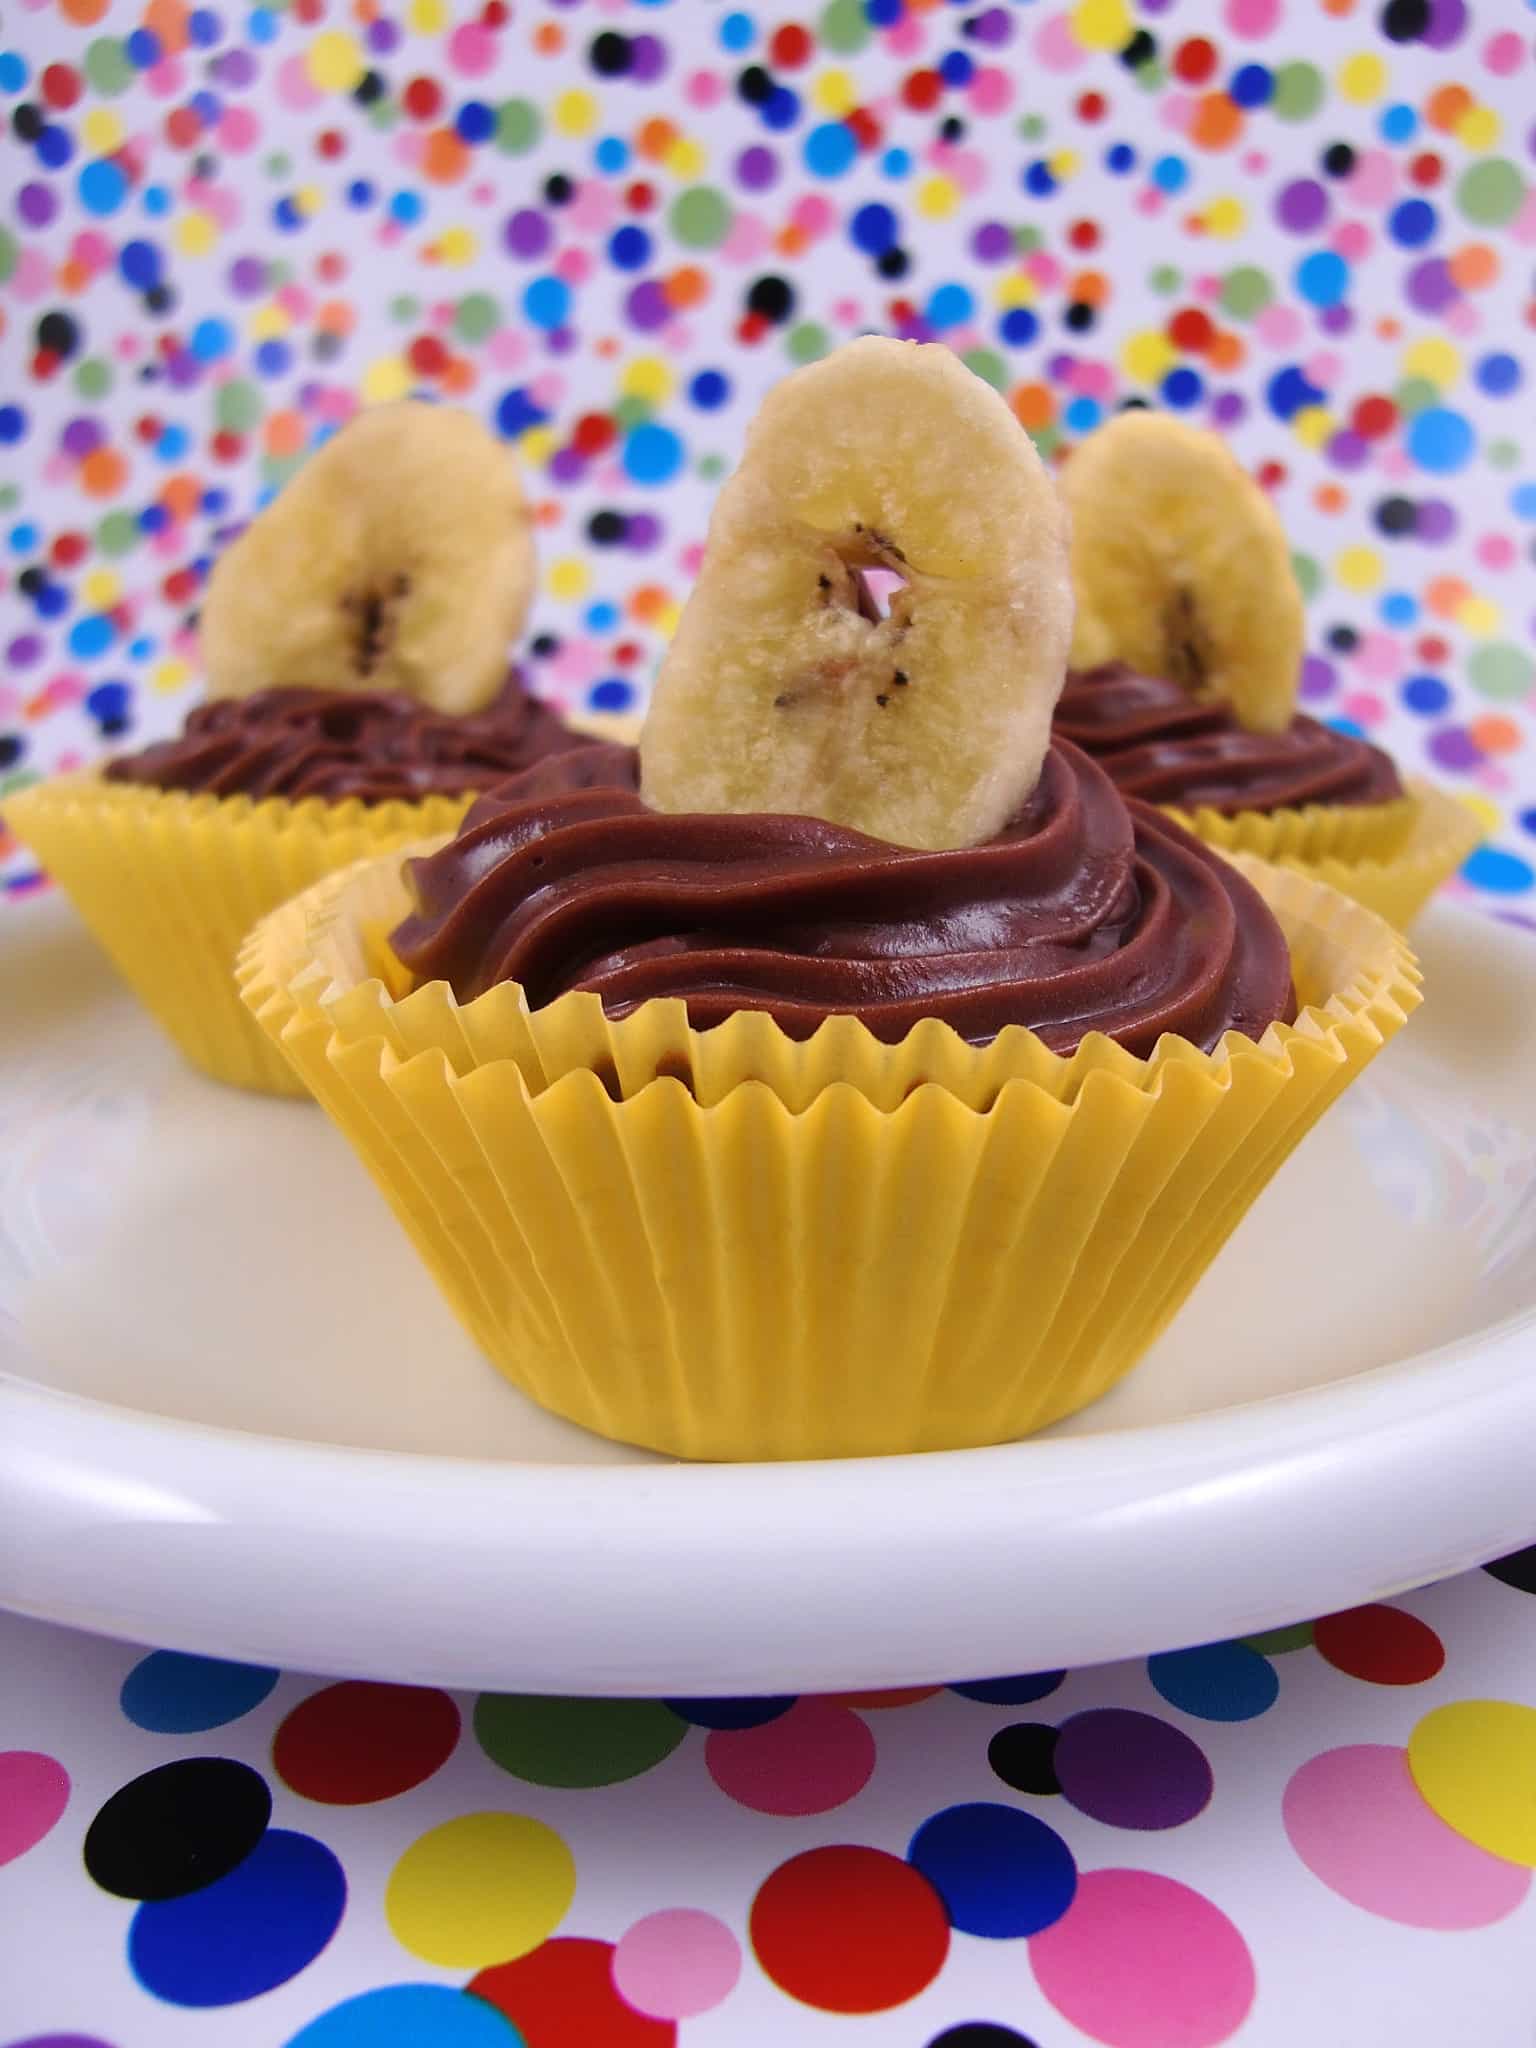 Schmecken ernsthaft unfassbar gut: Bananen-Cupcakes mit Frischkäse ...